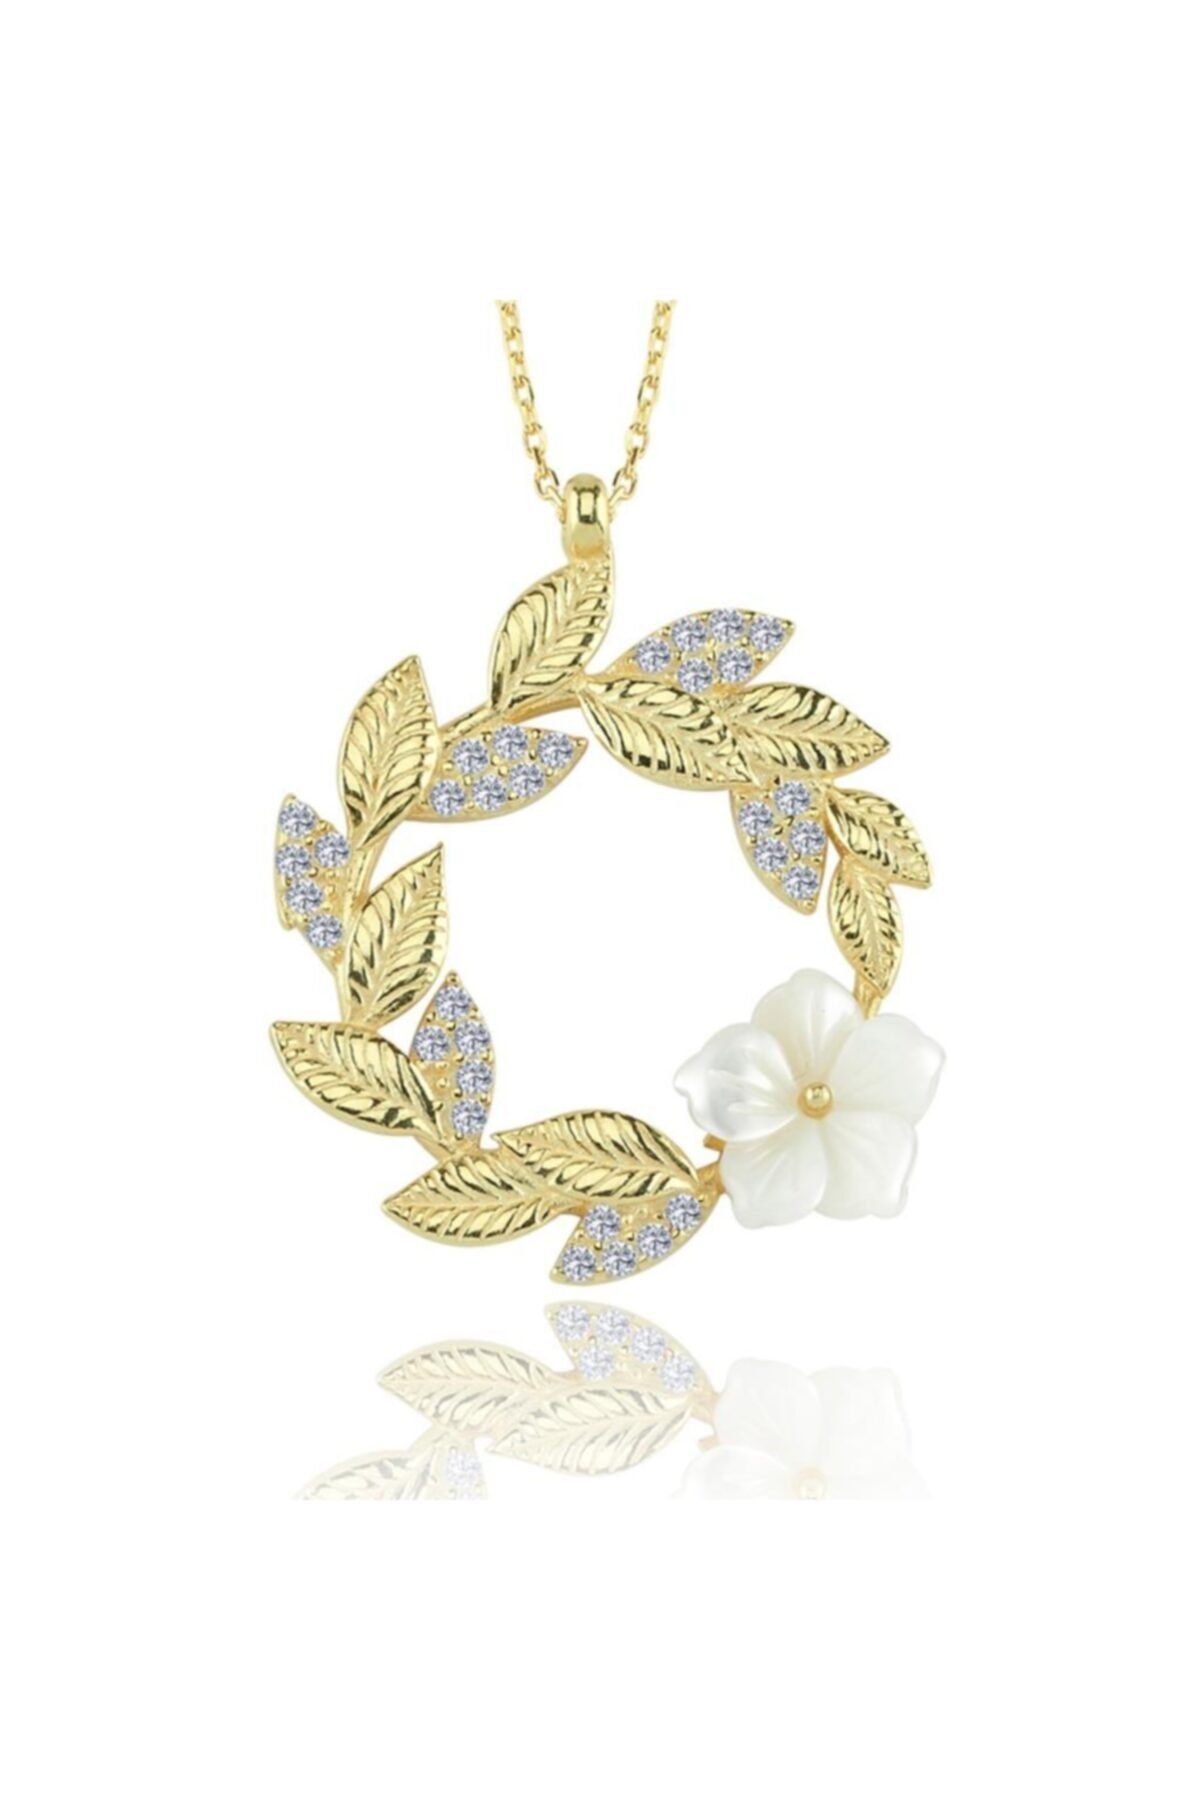 Mia Vento Gelin Buketi Manolya Çiçeği Gold Renk Flowers Gümüş Kolye